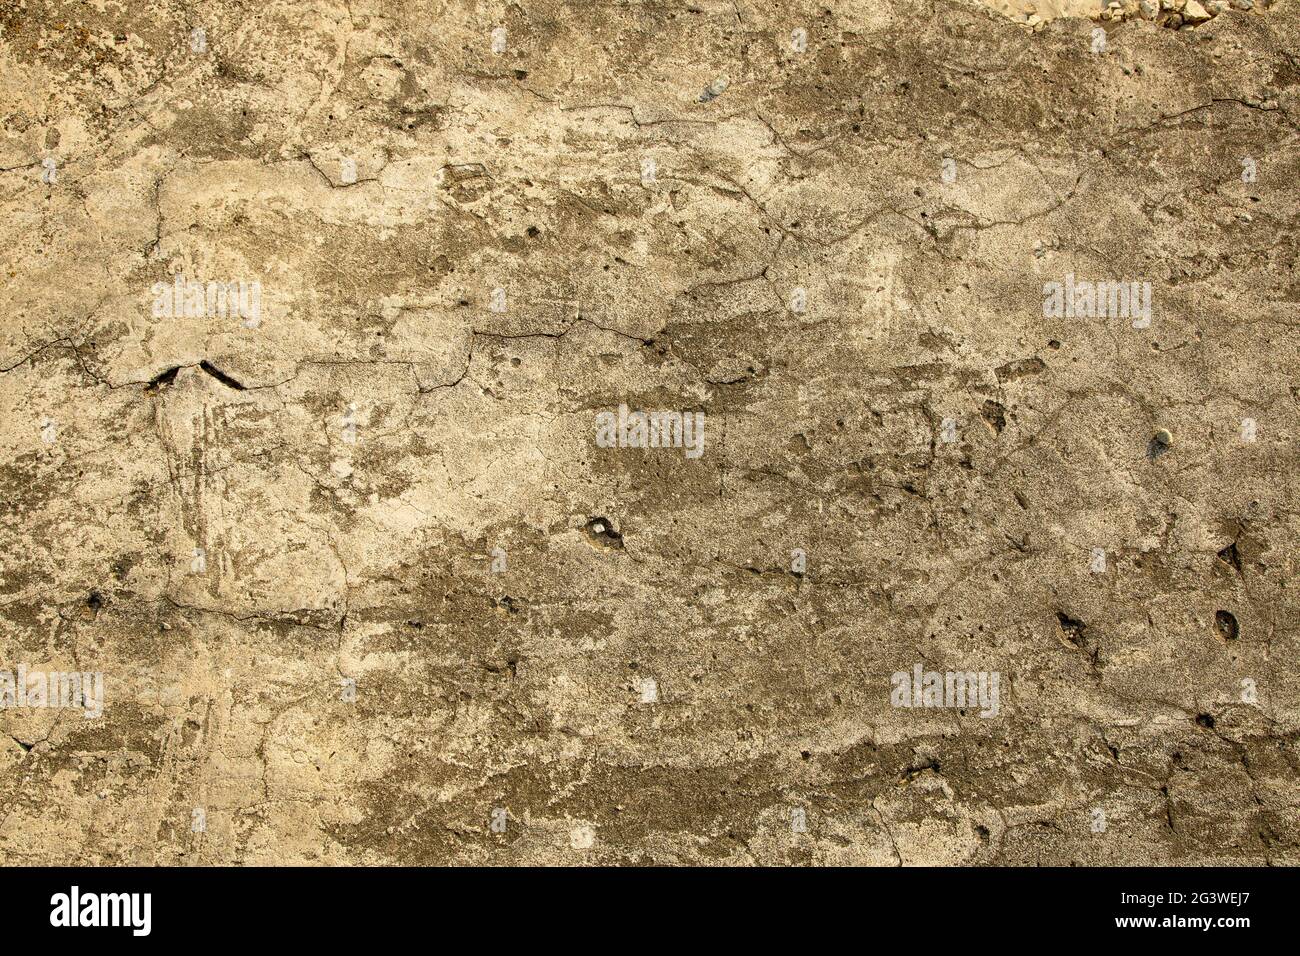 Varie texture e texture di pietra. Lo sfondo è una struttura di pietra. Vecchio muro beige. Parete incrinata, sbriciolamento. Foto Stock